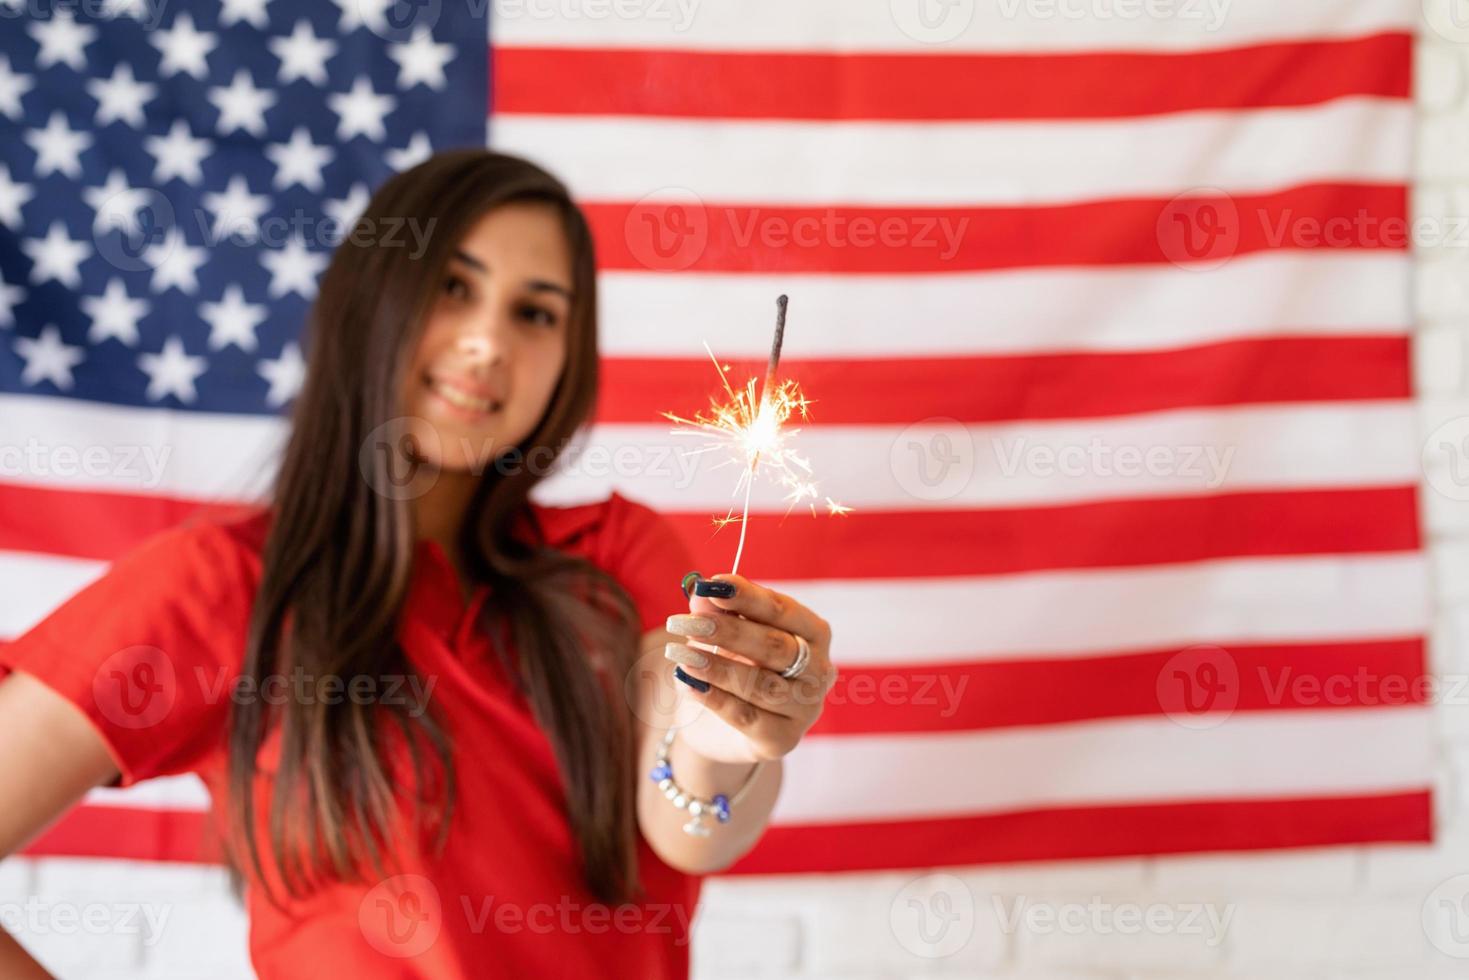 Bella mujer sosteniendo una bengala en el fondo de la bandera de Estados Unidos foto